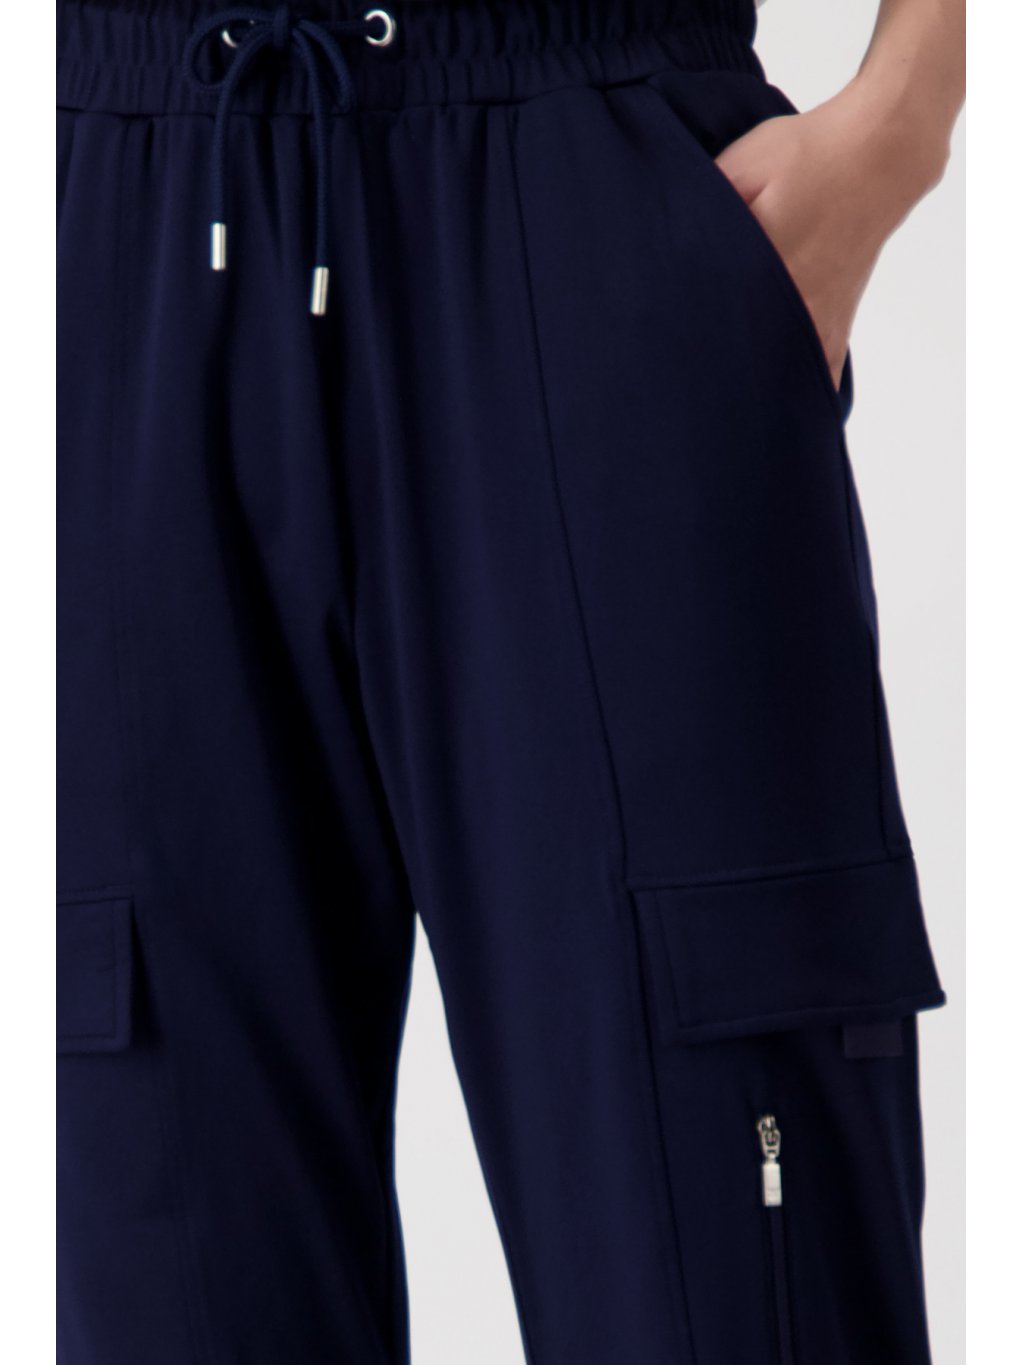 Kalhoty Monari 8871 tmavě modré v cargo stylu